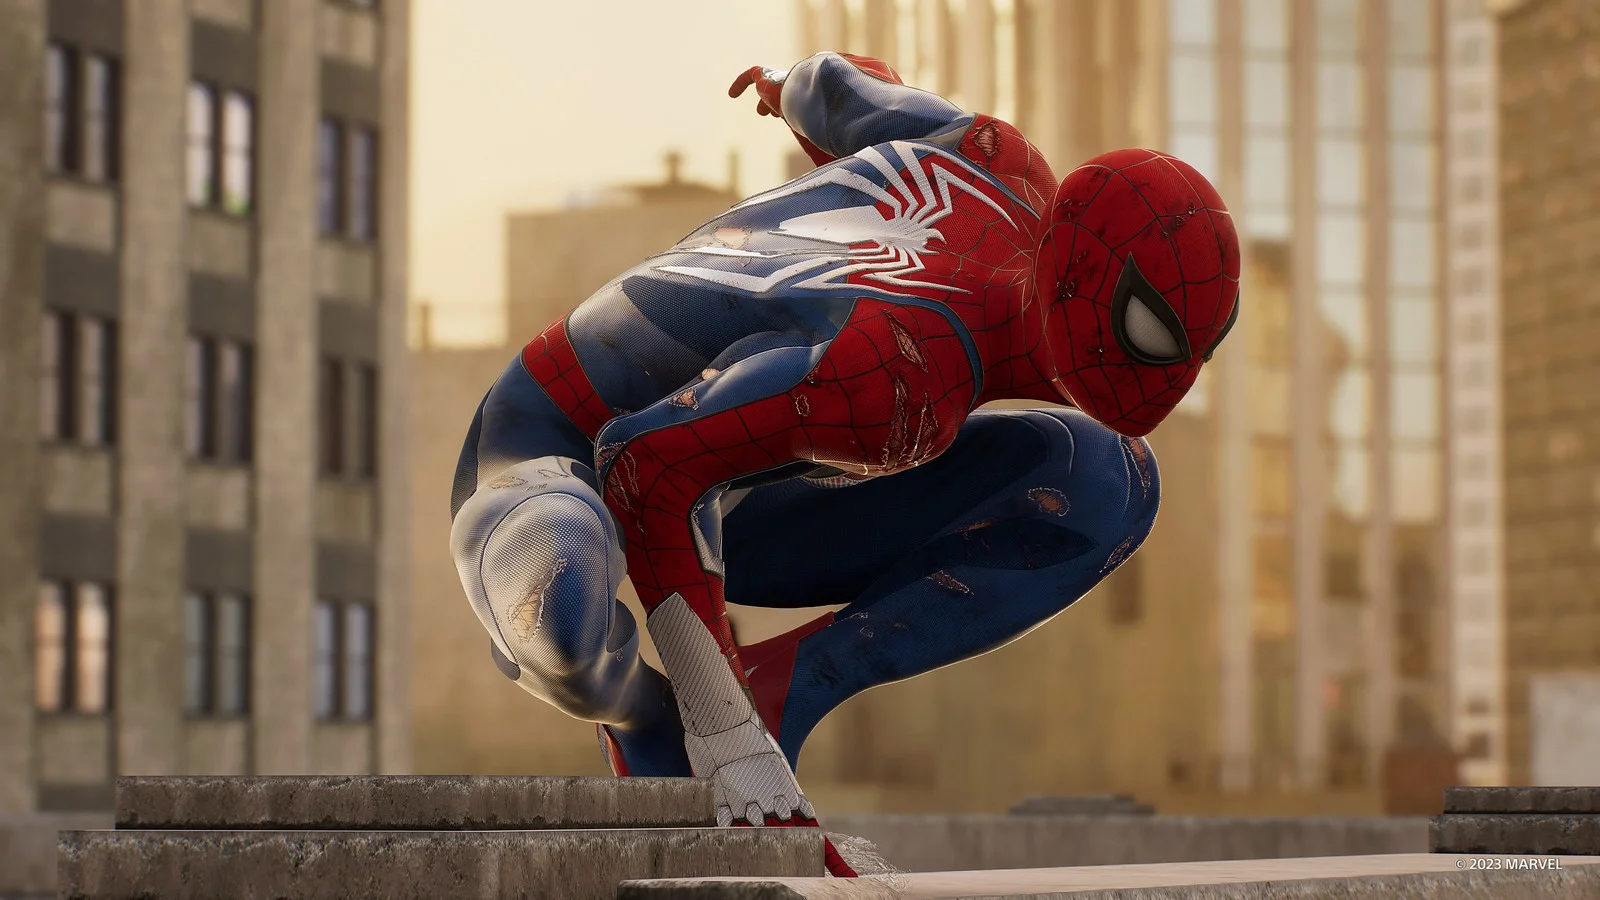 Marvel's Spider-Man 2 has been released